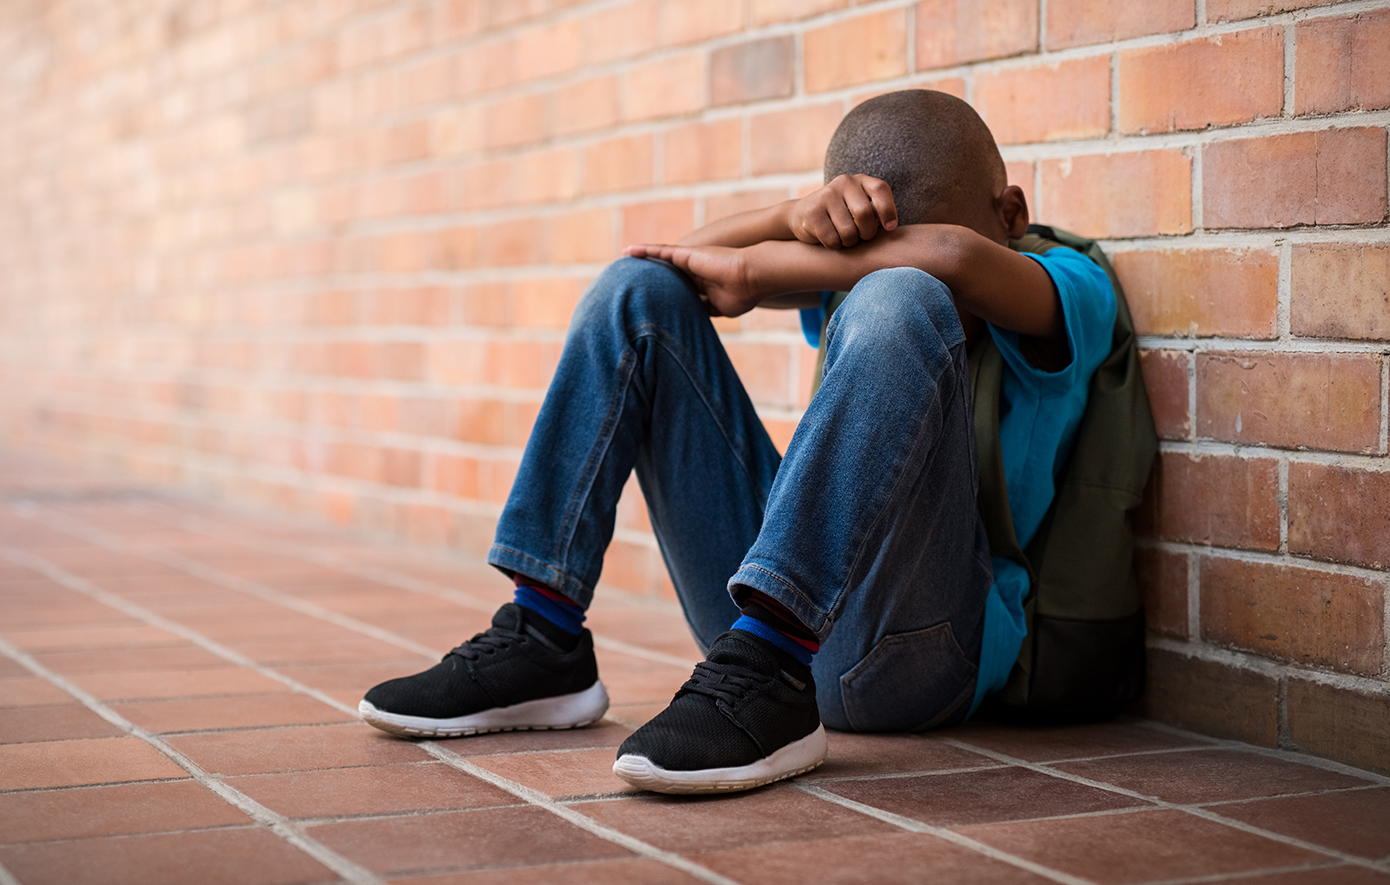 Νοσηλεύεται σε άσχημη κατάσταση ο 15χρονος στην Πάτρα – Αποκάλυψε πως είναι γκέι και τον ξυλοκόπησε ο πατέρας του